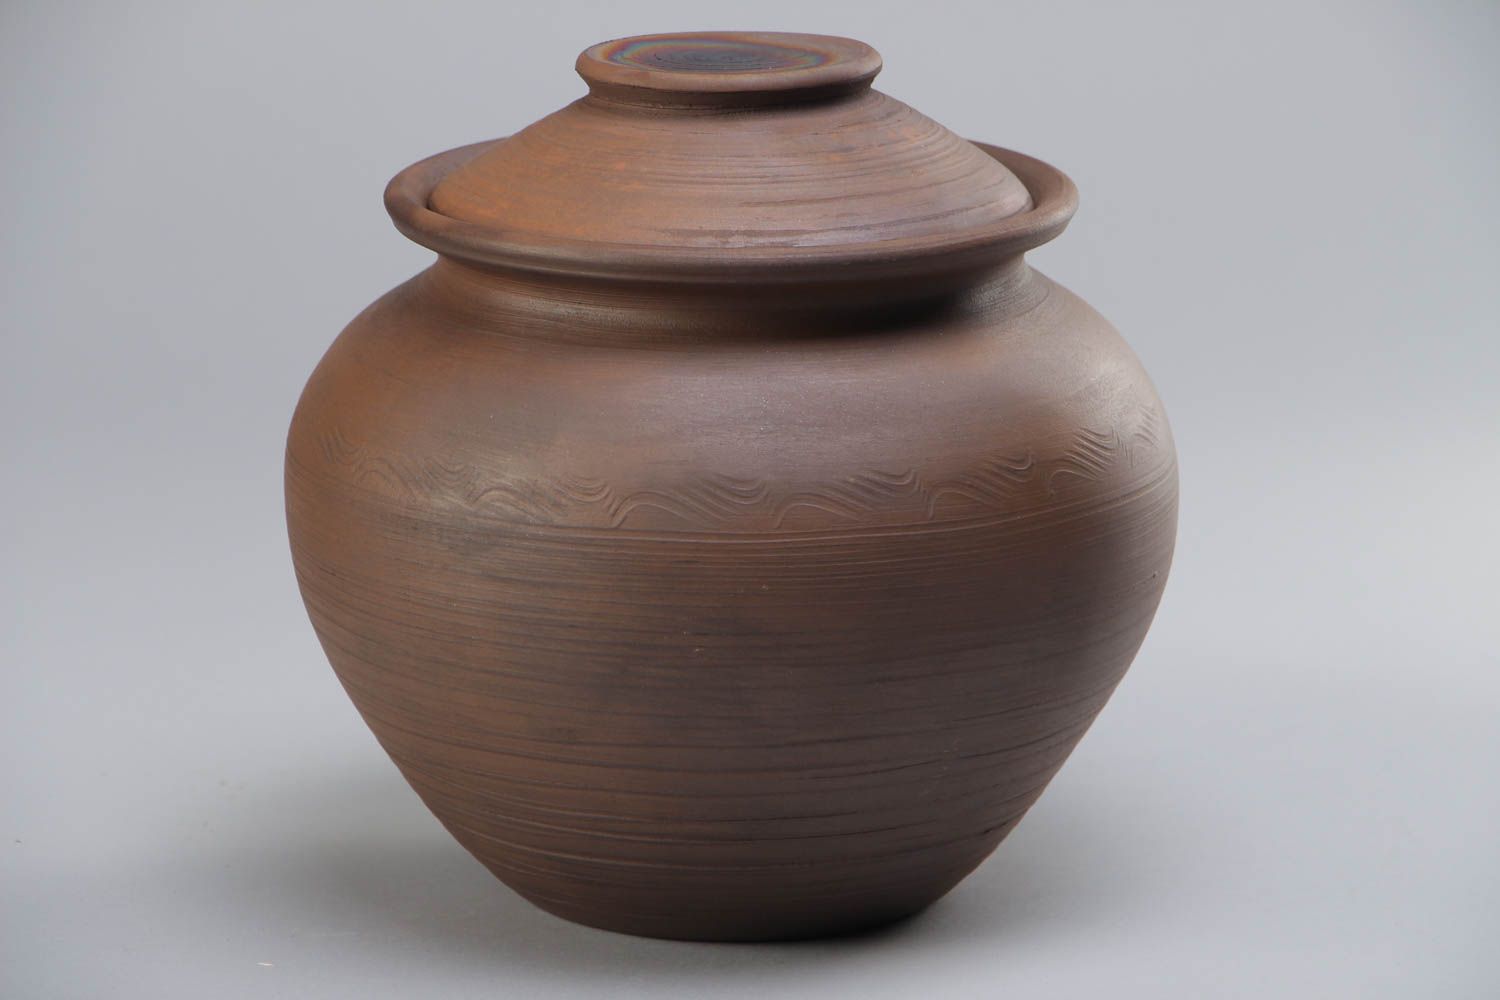 Ceramic Pot With Lid 